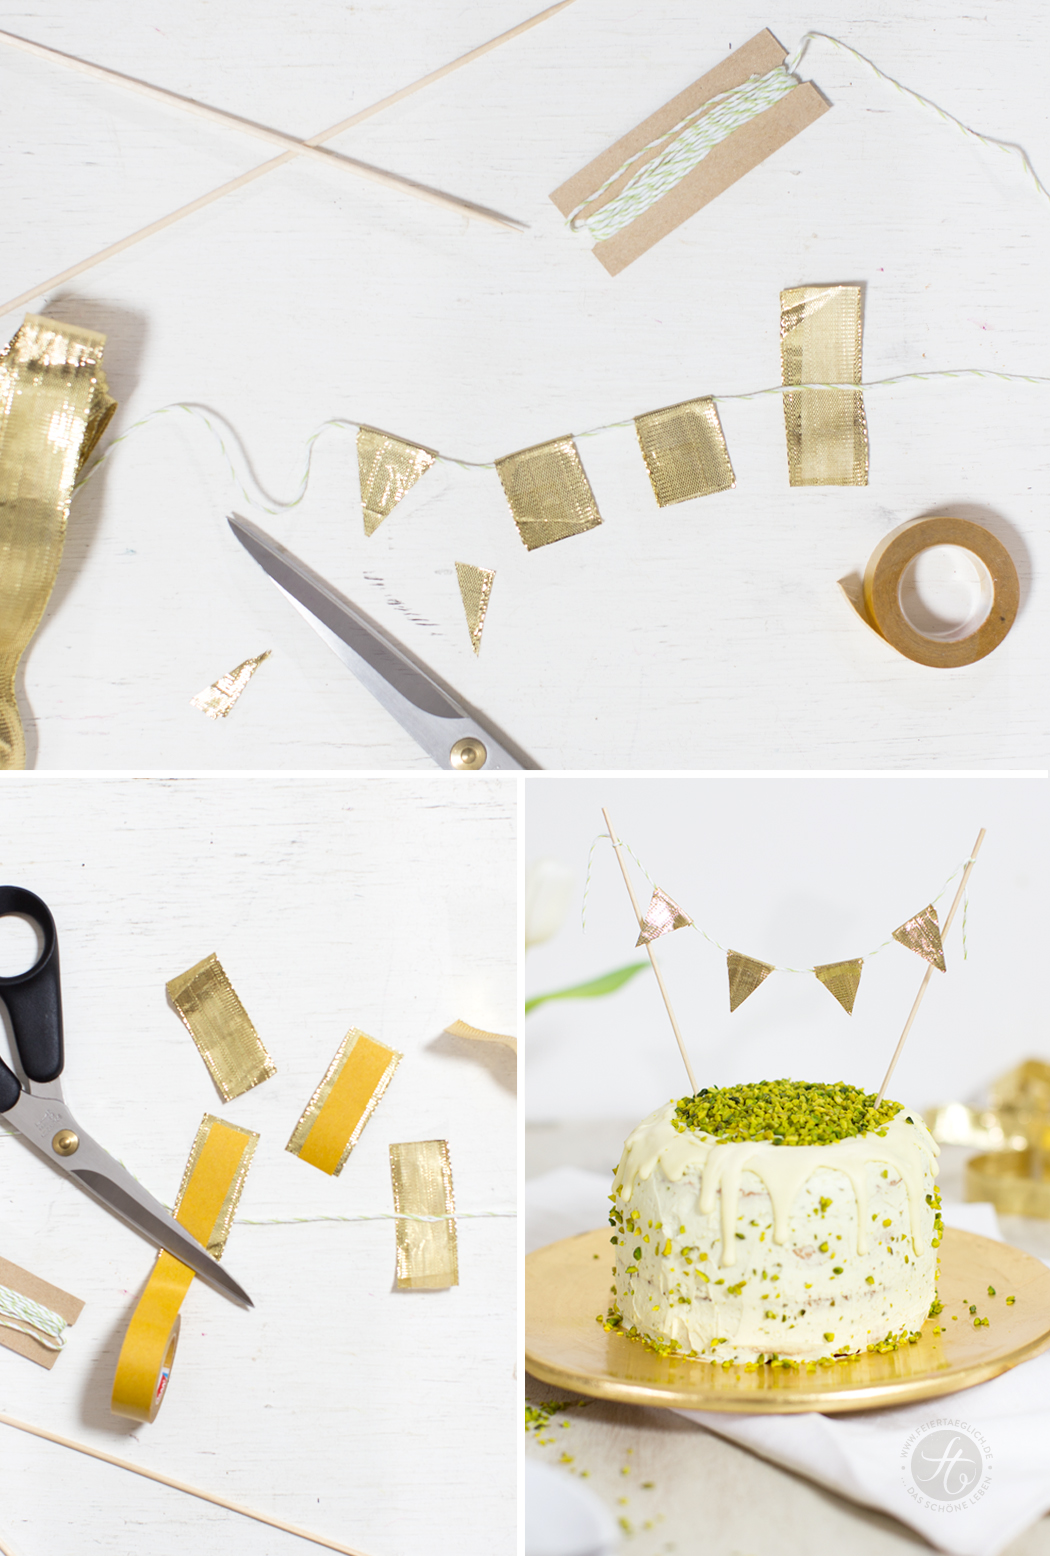 Pistazien-Torte mit Pistazien-Mascarponecreme und weisser Schokolade + DIY Wimpelkette –ein Traum in Pastellgrün und Gold // feiertäglich.de